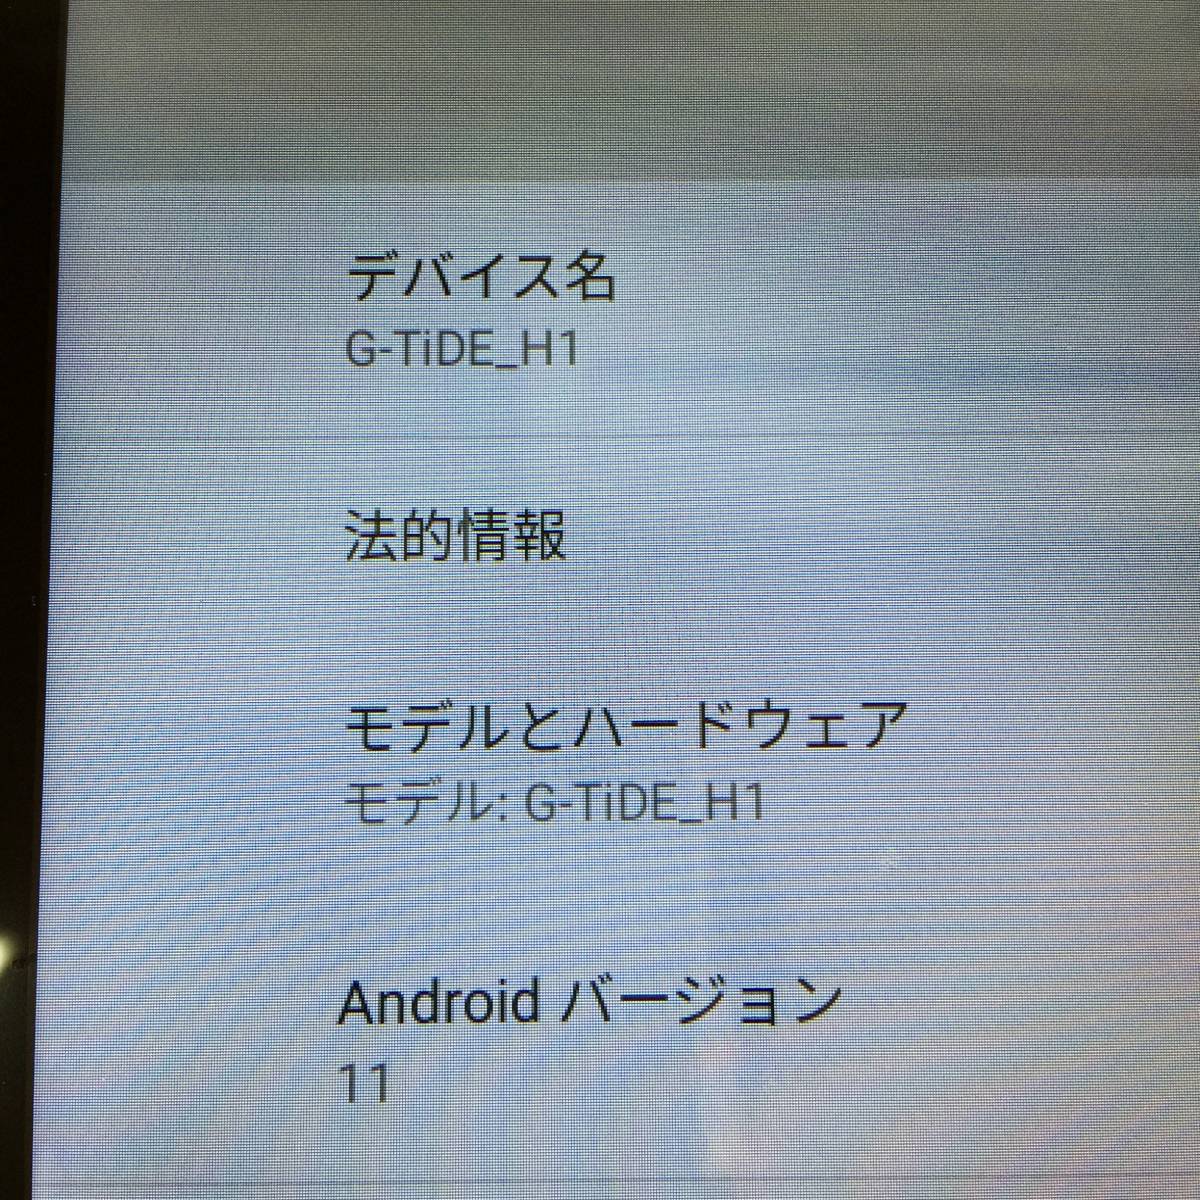 G-TiDE_H1 androidタブレット アンドロイド11 10インチ 本体・ケースのみ_画像2